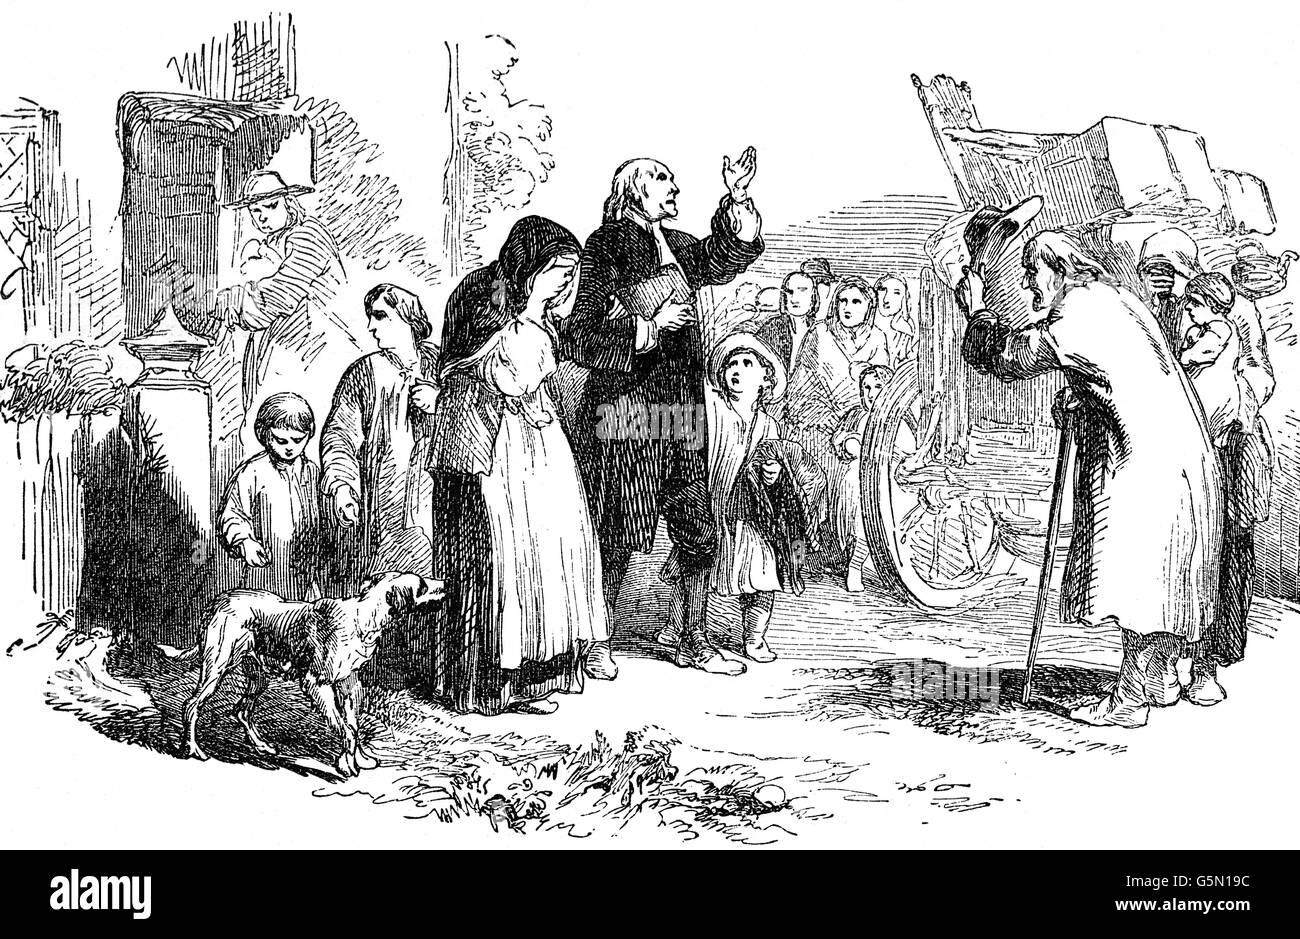 Le Grand a suivi l'éjection Loi d'uniformité 1662 en Angleterre, le jour de la Saint-Barthélemy (24 août). Deux mille ministres puritains ont été forcés de quitter leurs positions par le clergé de l'Église d'Angleterre, à la suite des changements après le rétablissement au pouvoir de Charles II. Banque D'Images